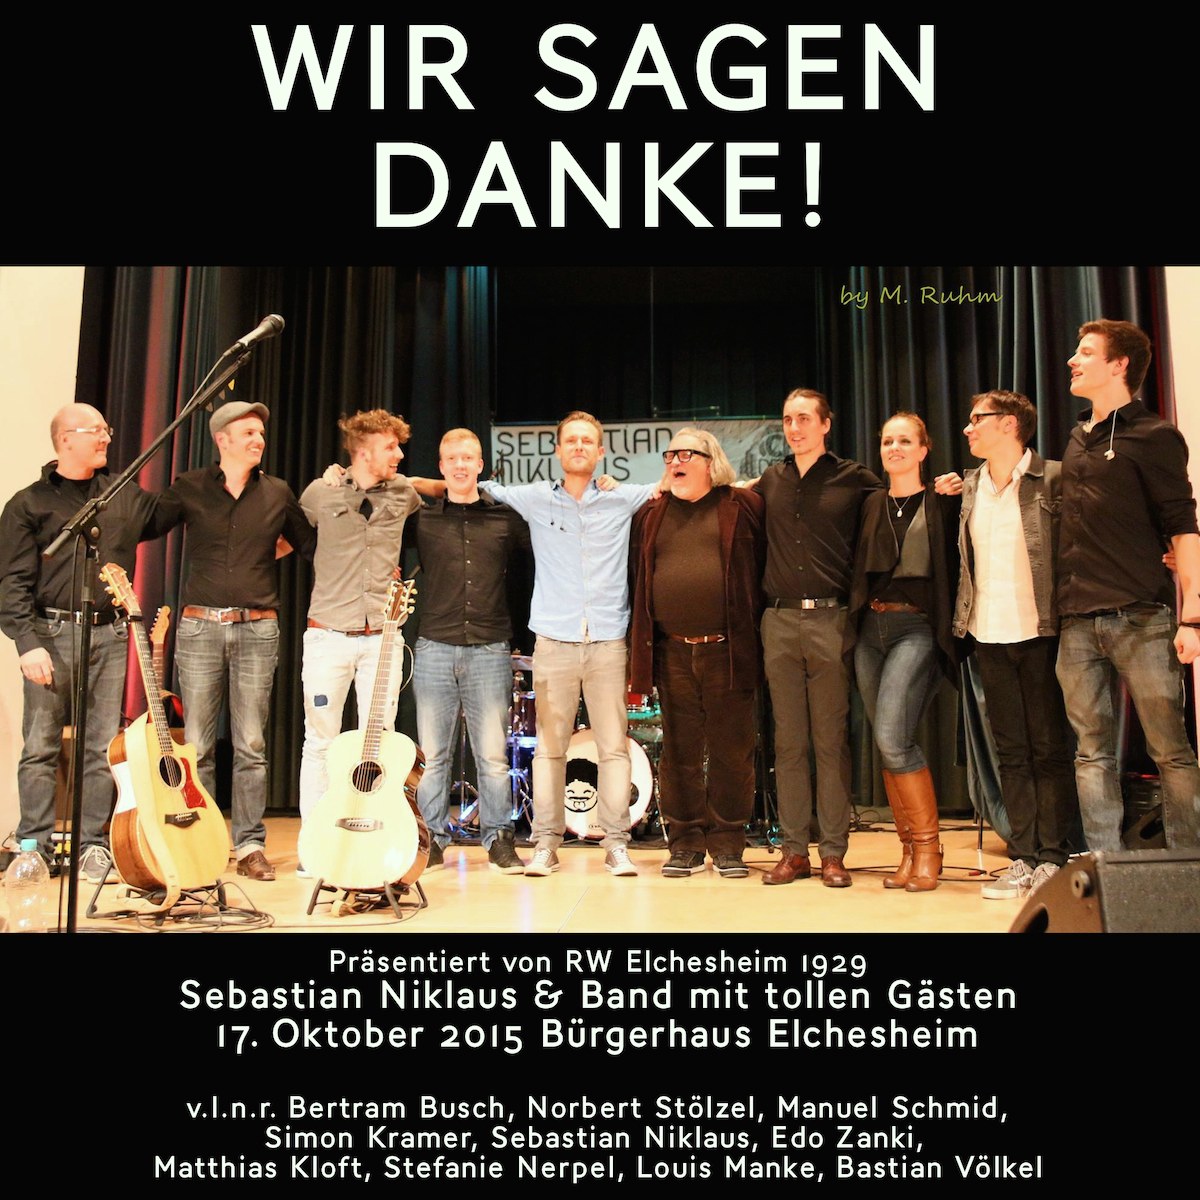 Wir sagen DANKE! - Tourfinale in Elchesheim am 17. Oktober 2015